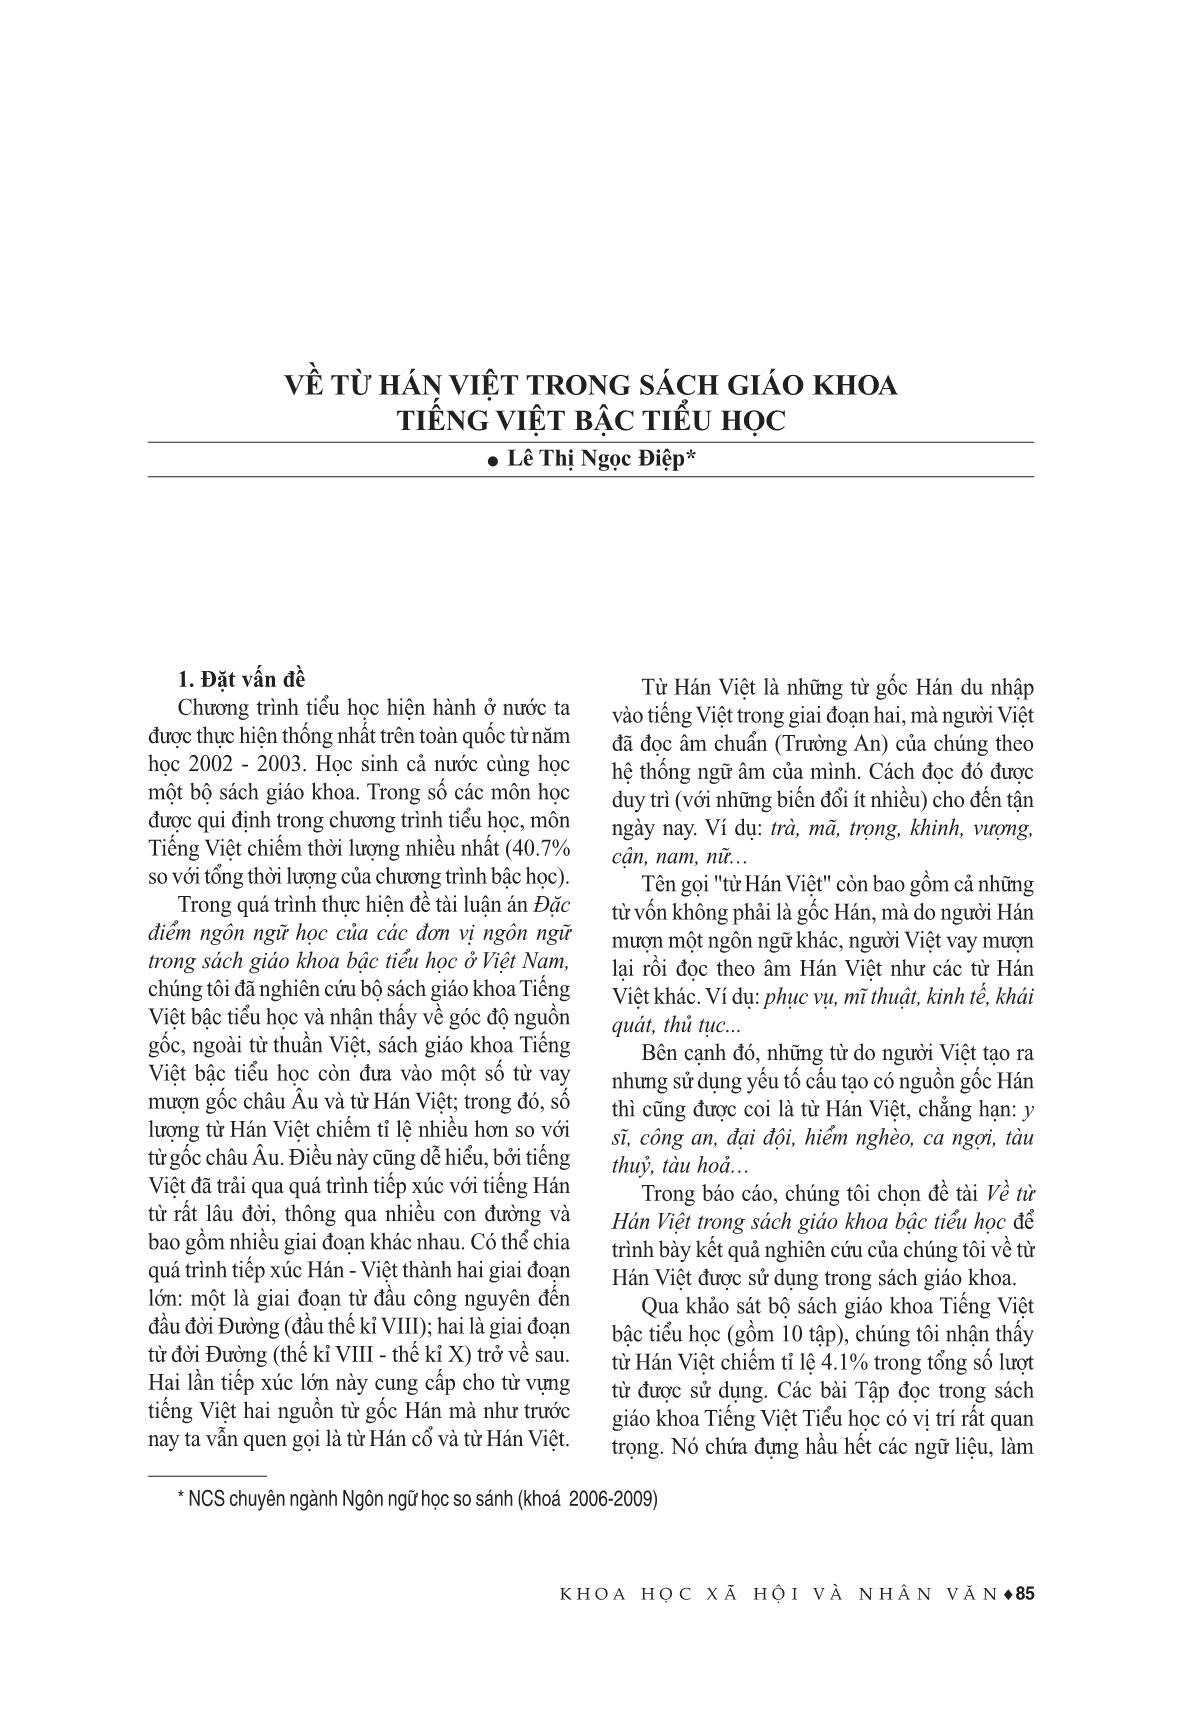 Về từ Hán Việt trong sách giáo khoa Tiếng Việt bậc Tiểu học trang 1